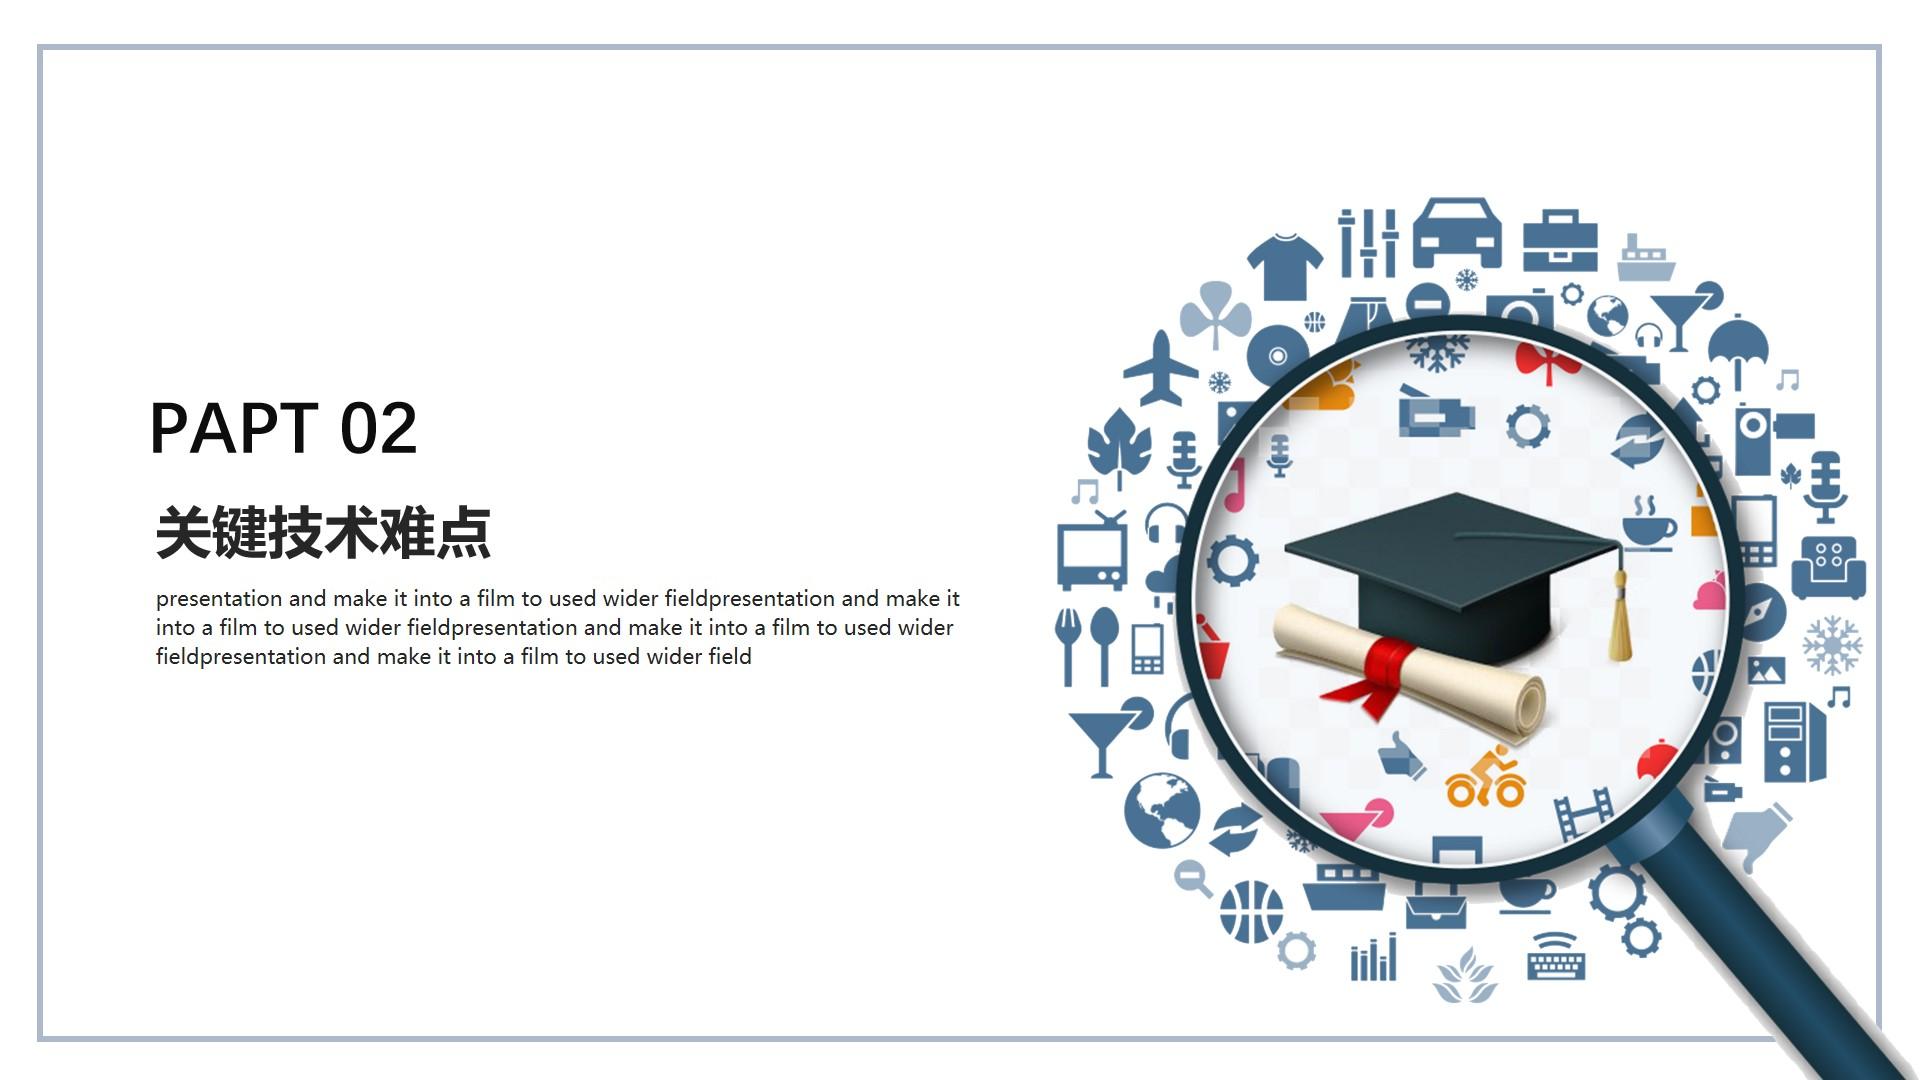 教育教学白色黑色中国风papt 关键 技术云素材PPT模板1672506659378